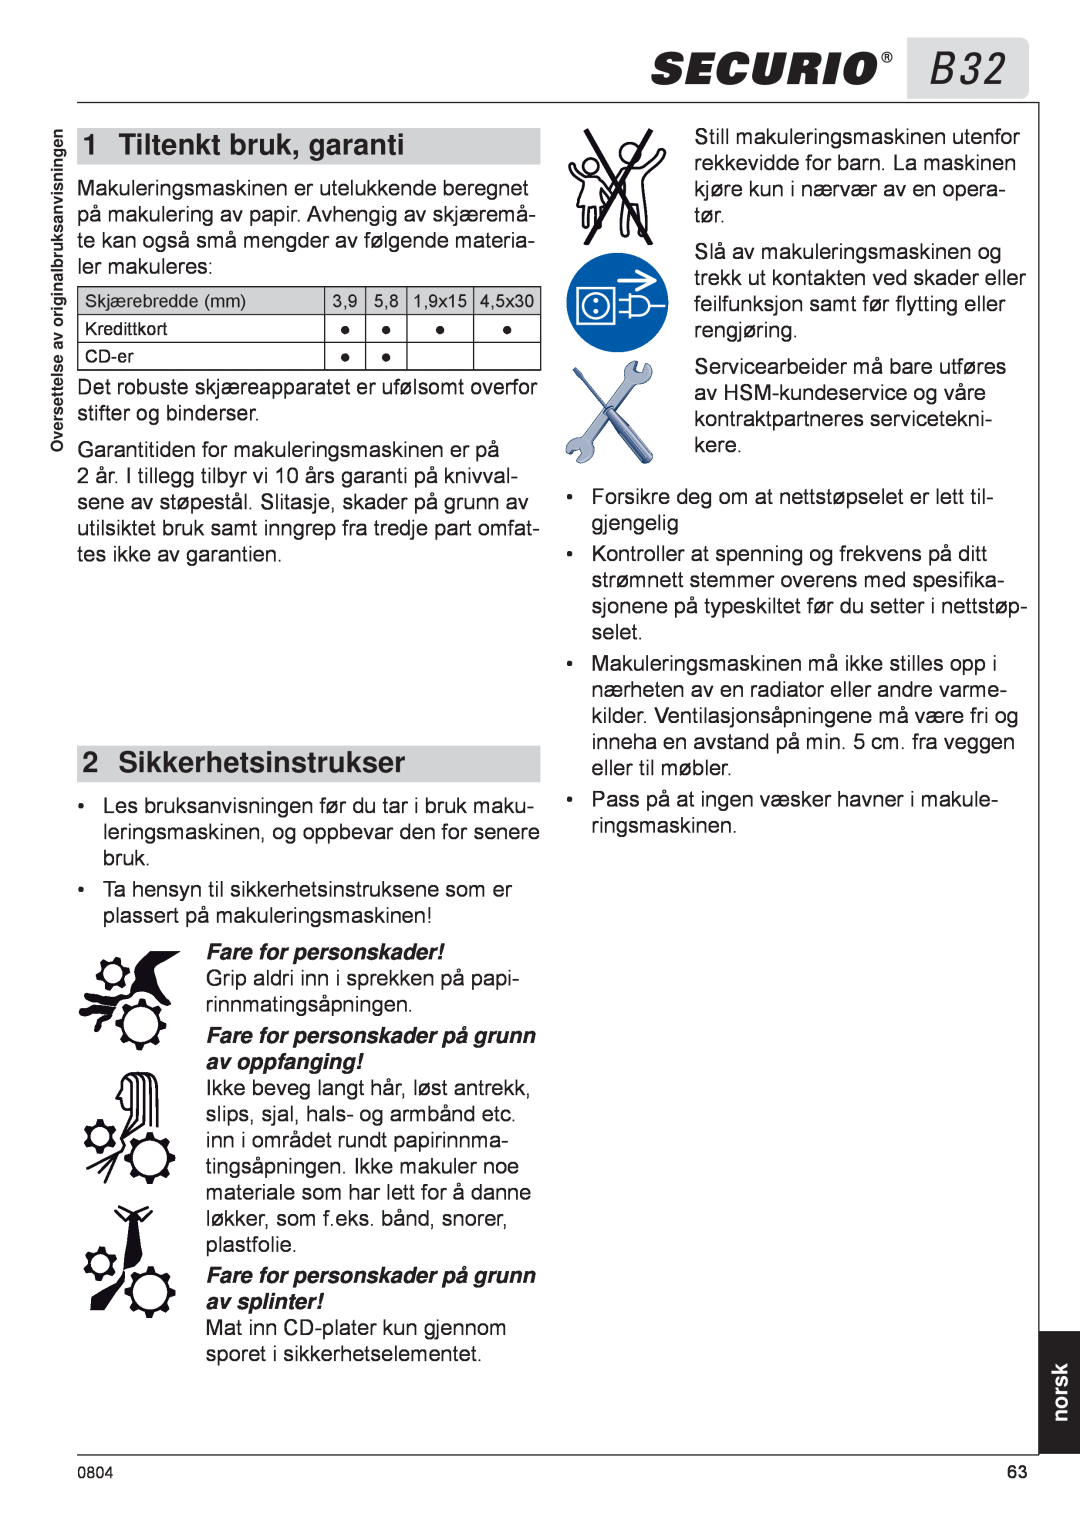 HSM B32 manual Tiltenkt bruk, garanti, Sikkerhetsinstrukser, Fare for personskader på grunn av oppfanging, norsk 